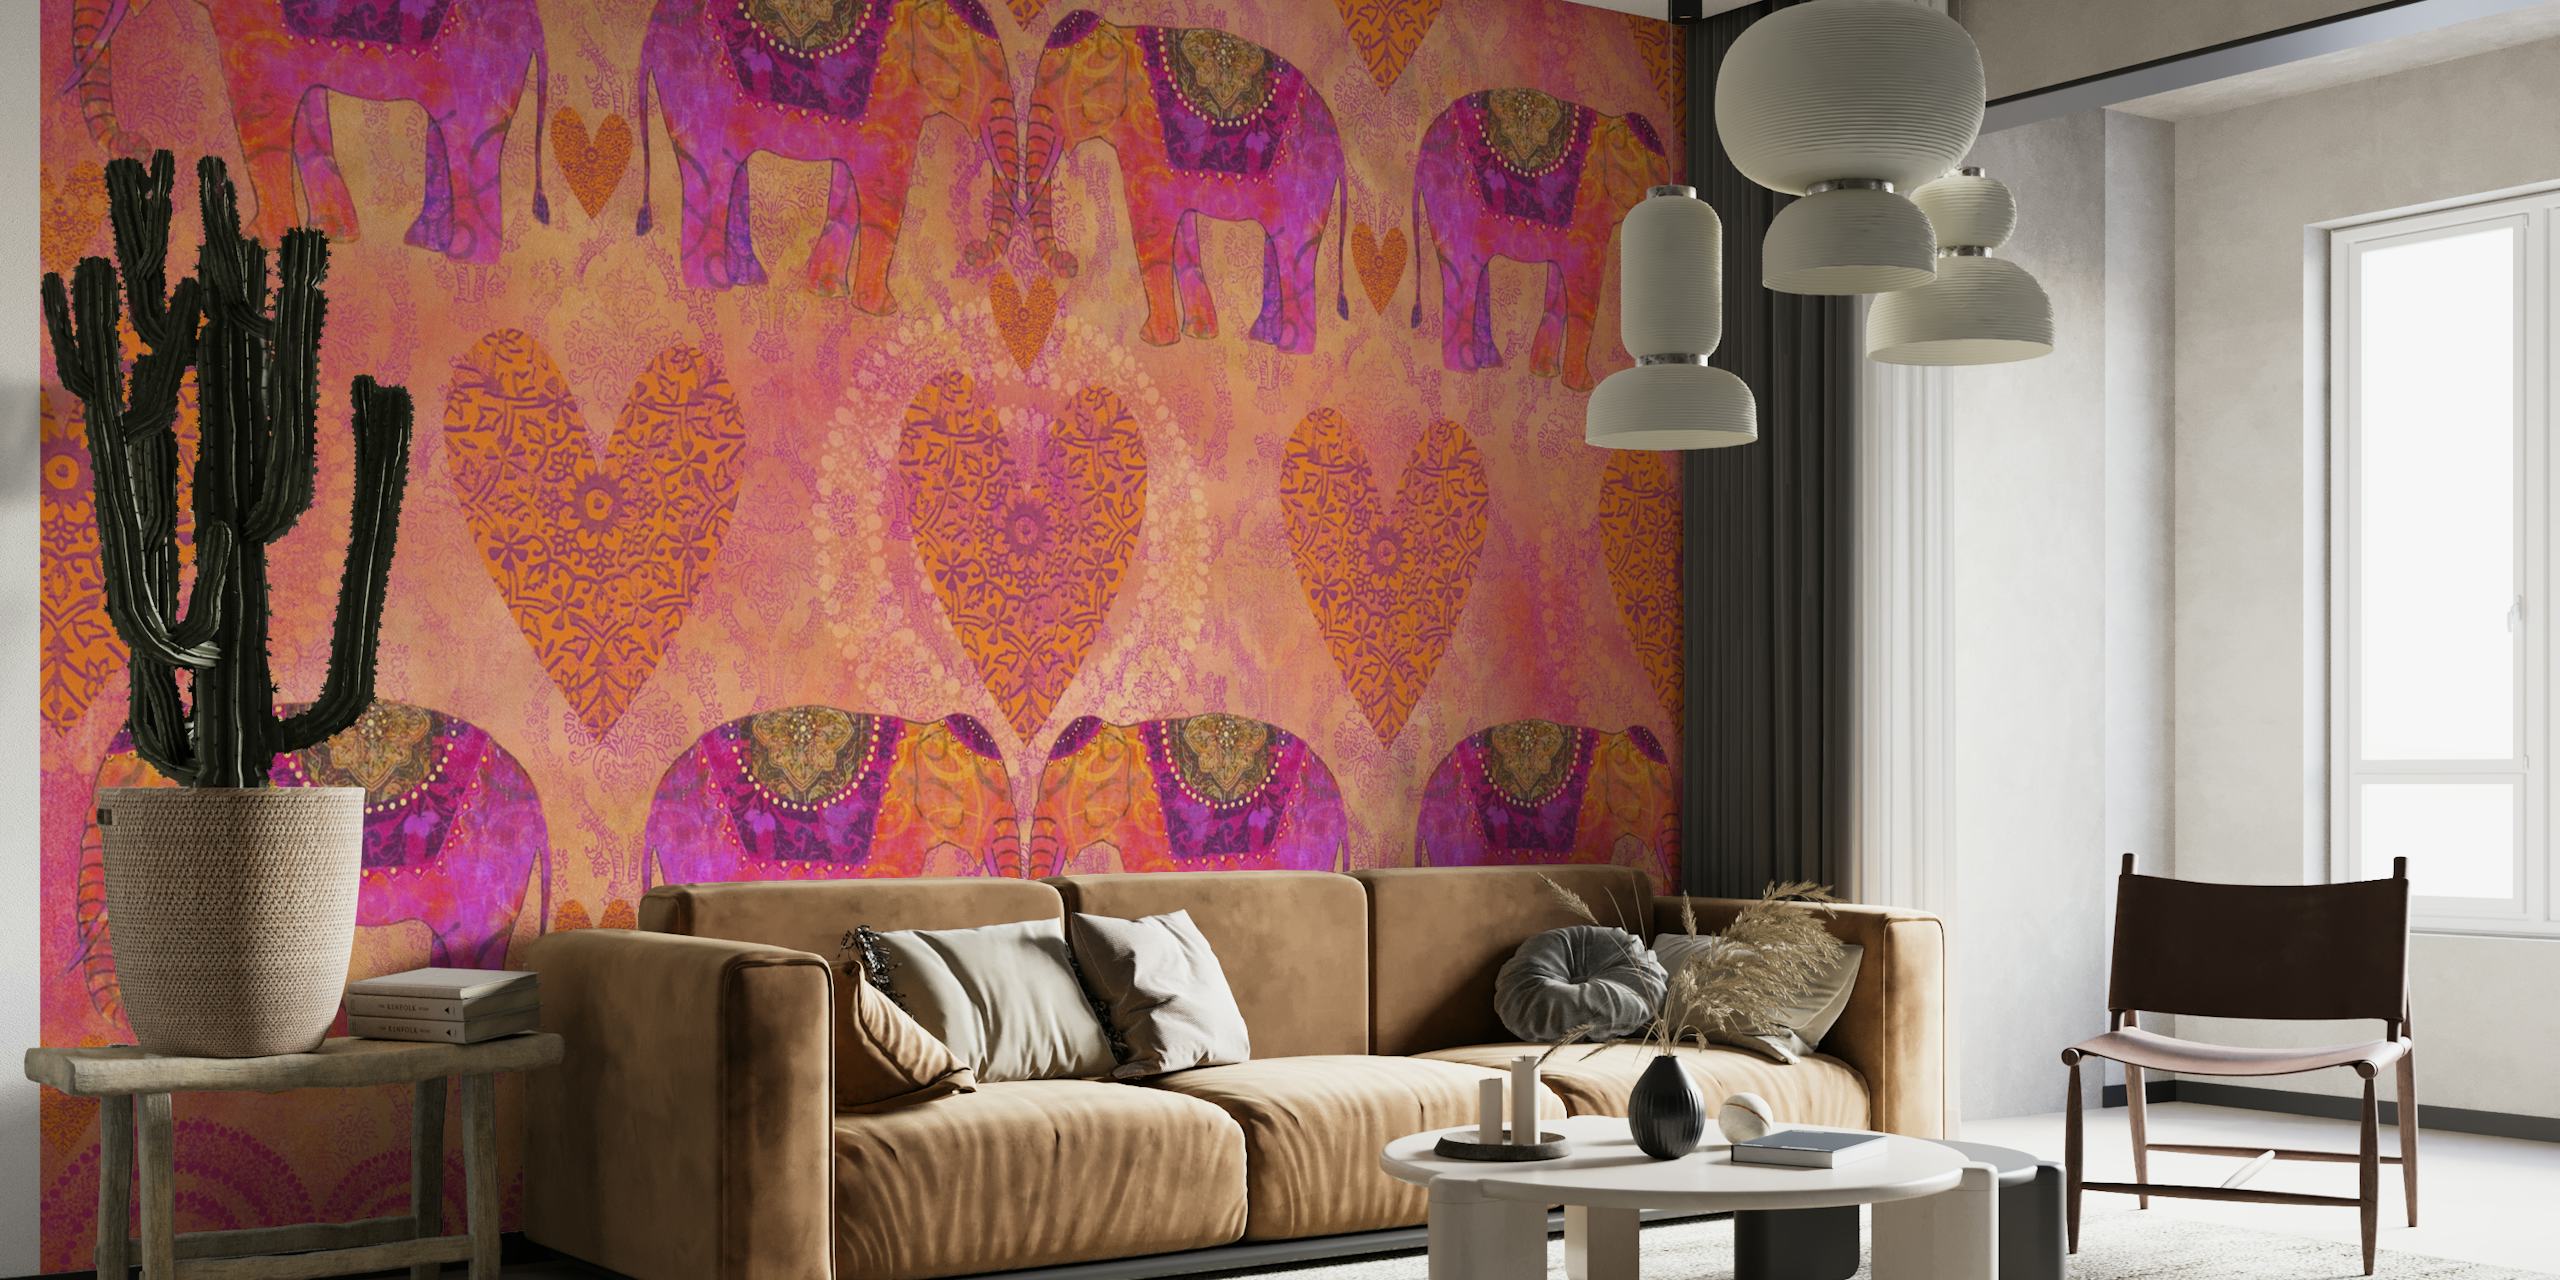 Elephants In Love wallpaper